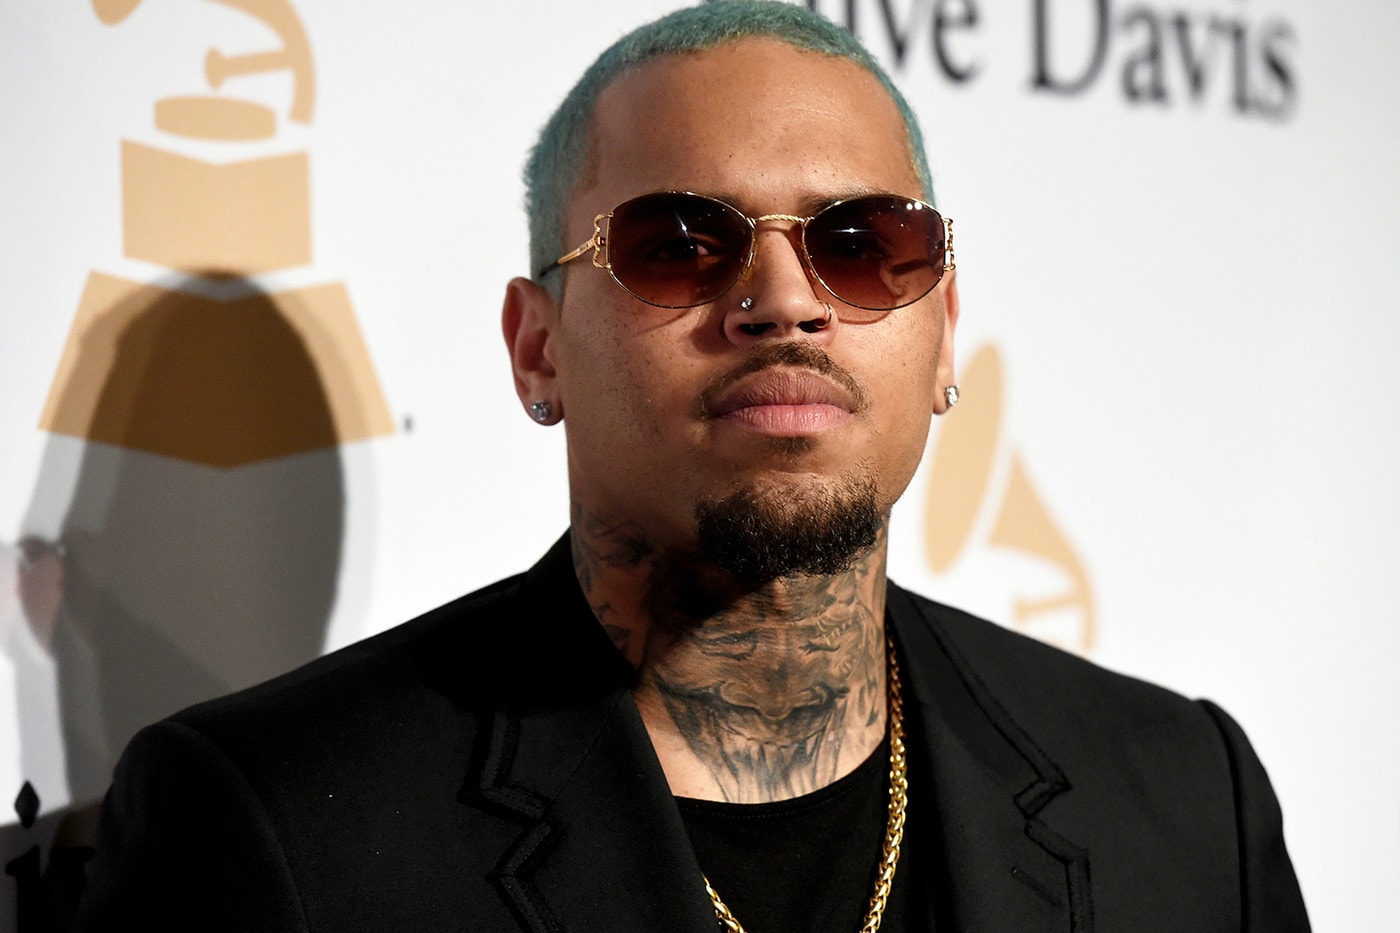 說唱歌手 Chris Brown 因「性侵」罪名遭法國警方逮捕